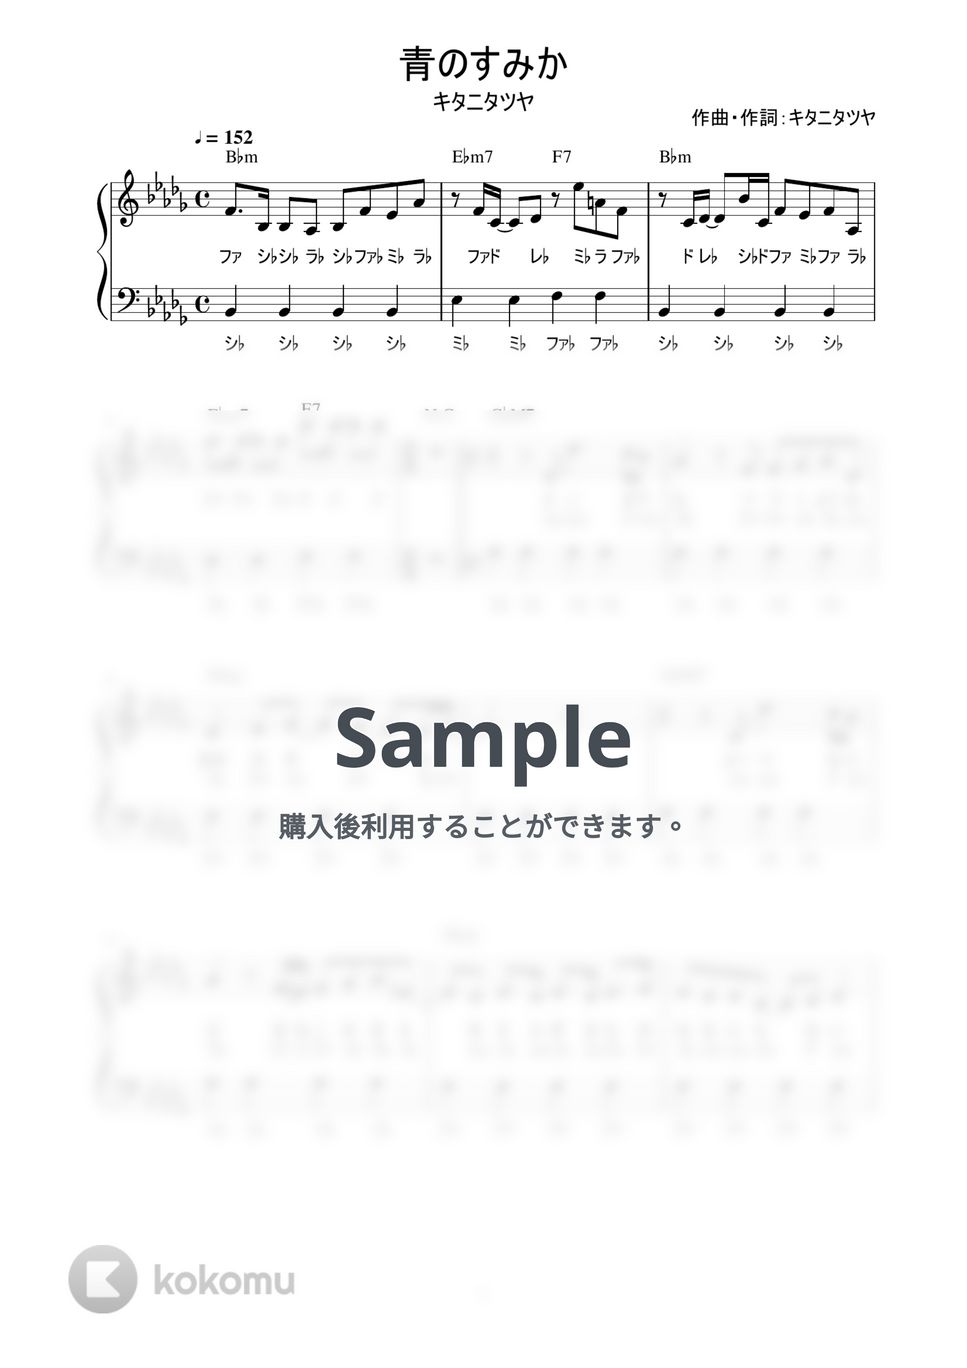 キタニタツヤ - 青のすみか (かんたん / 歌詞付き / ドレミ付き / 初心者) by piano.tokyo